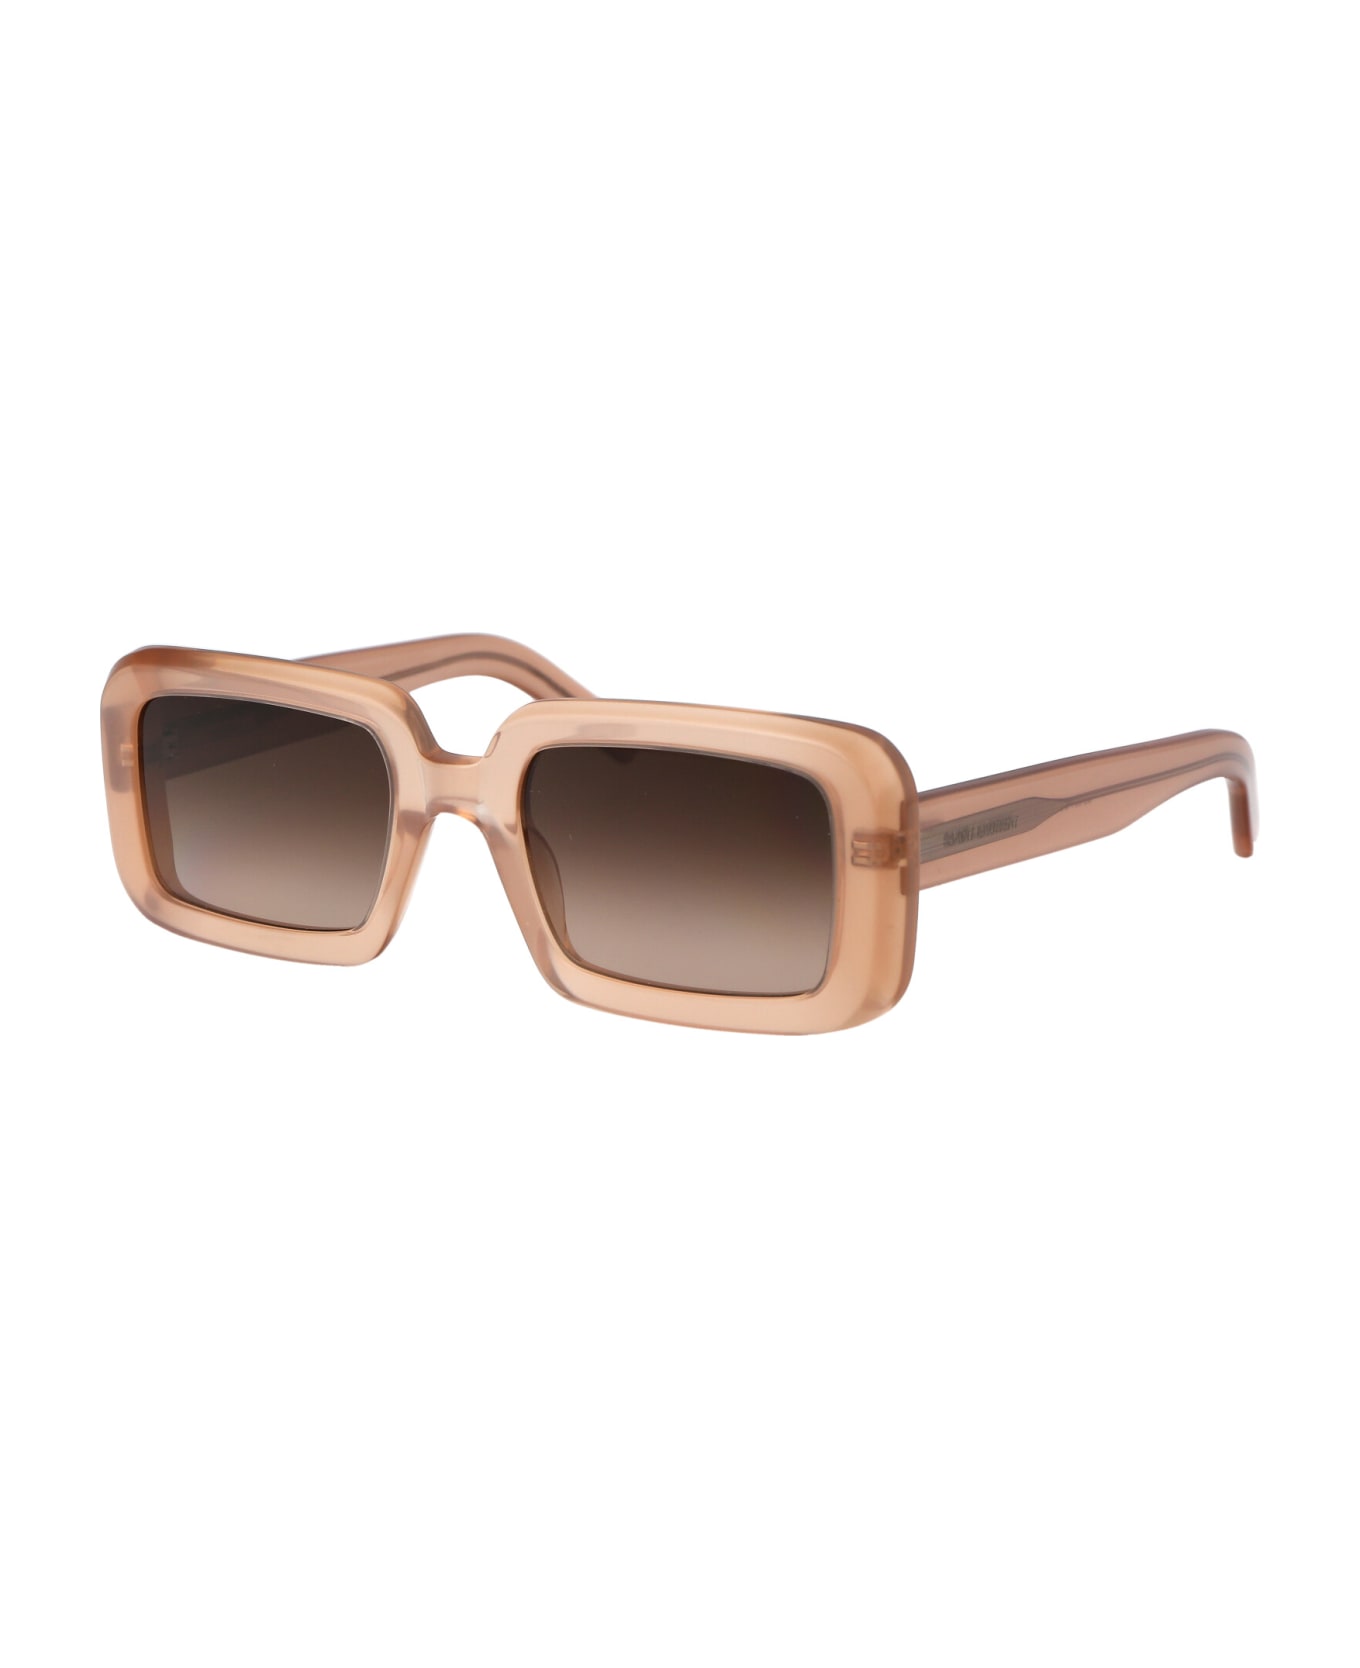 Saint Laurent Eyewear Sl 534 Sunrise Sunglasses - 014 ORANGE ORANGE BROWN